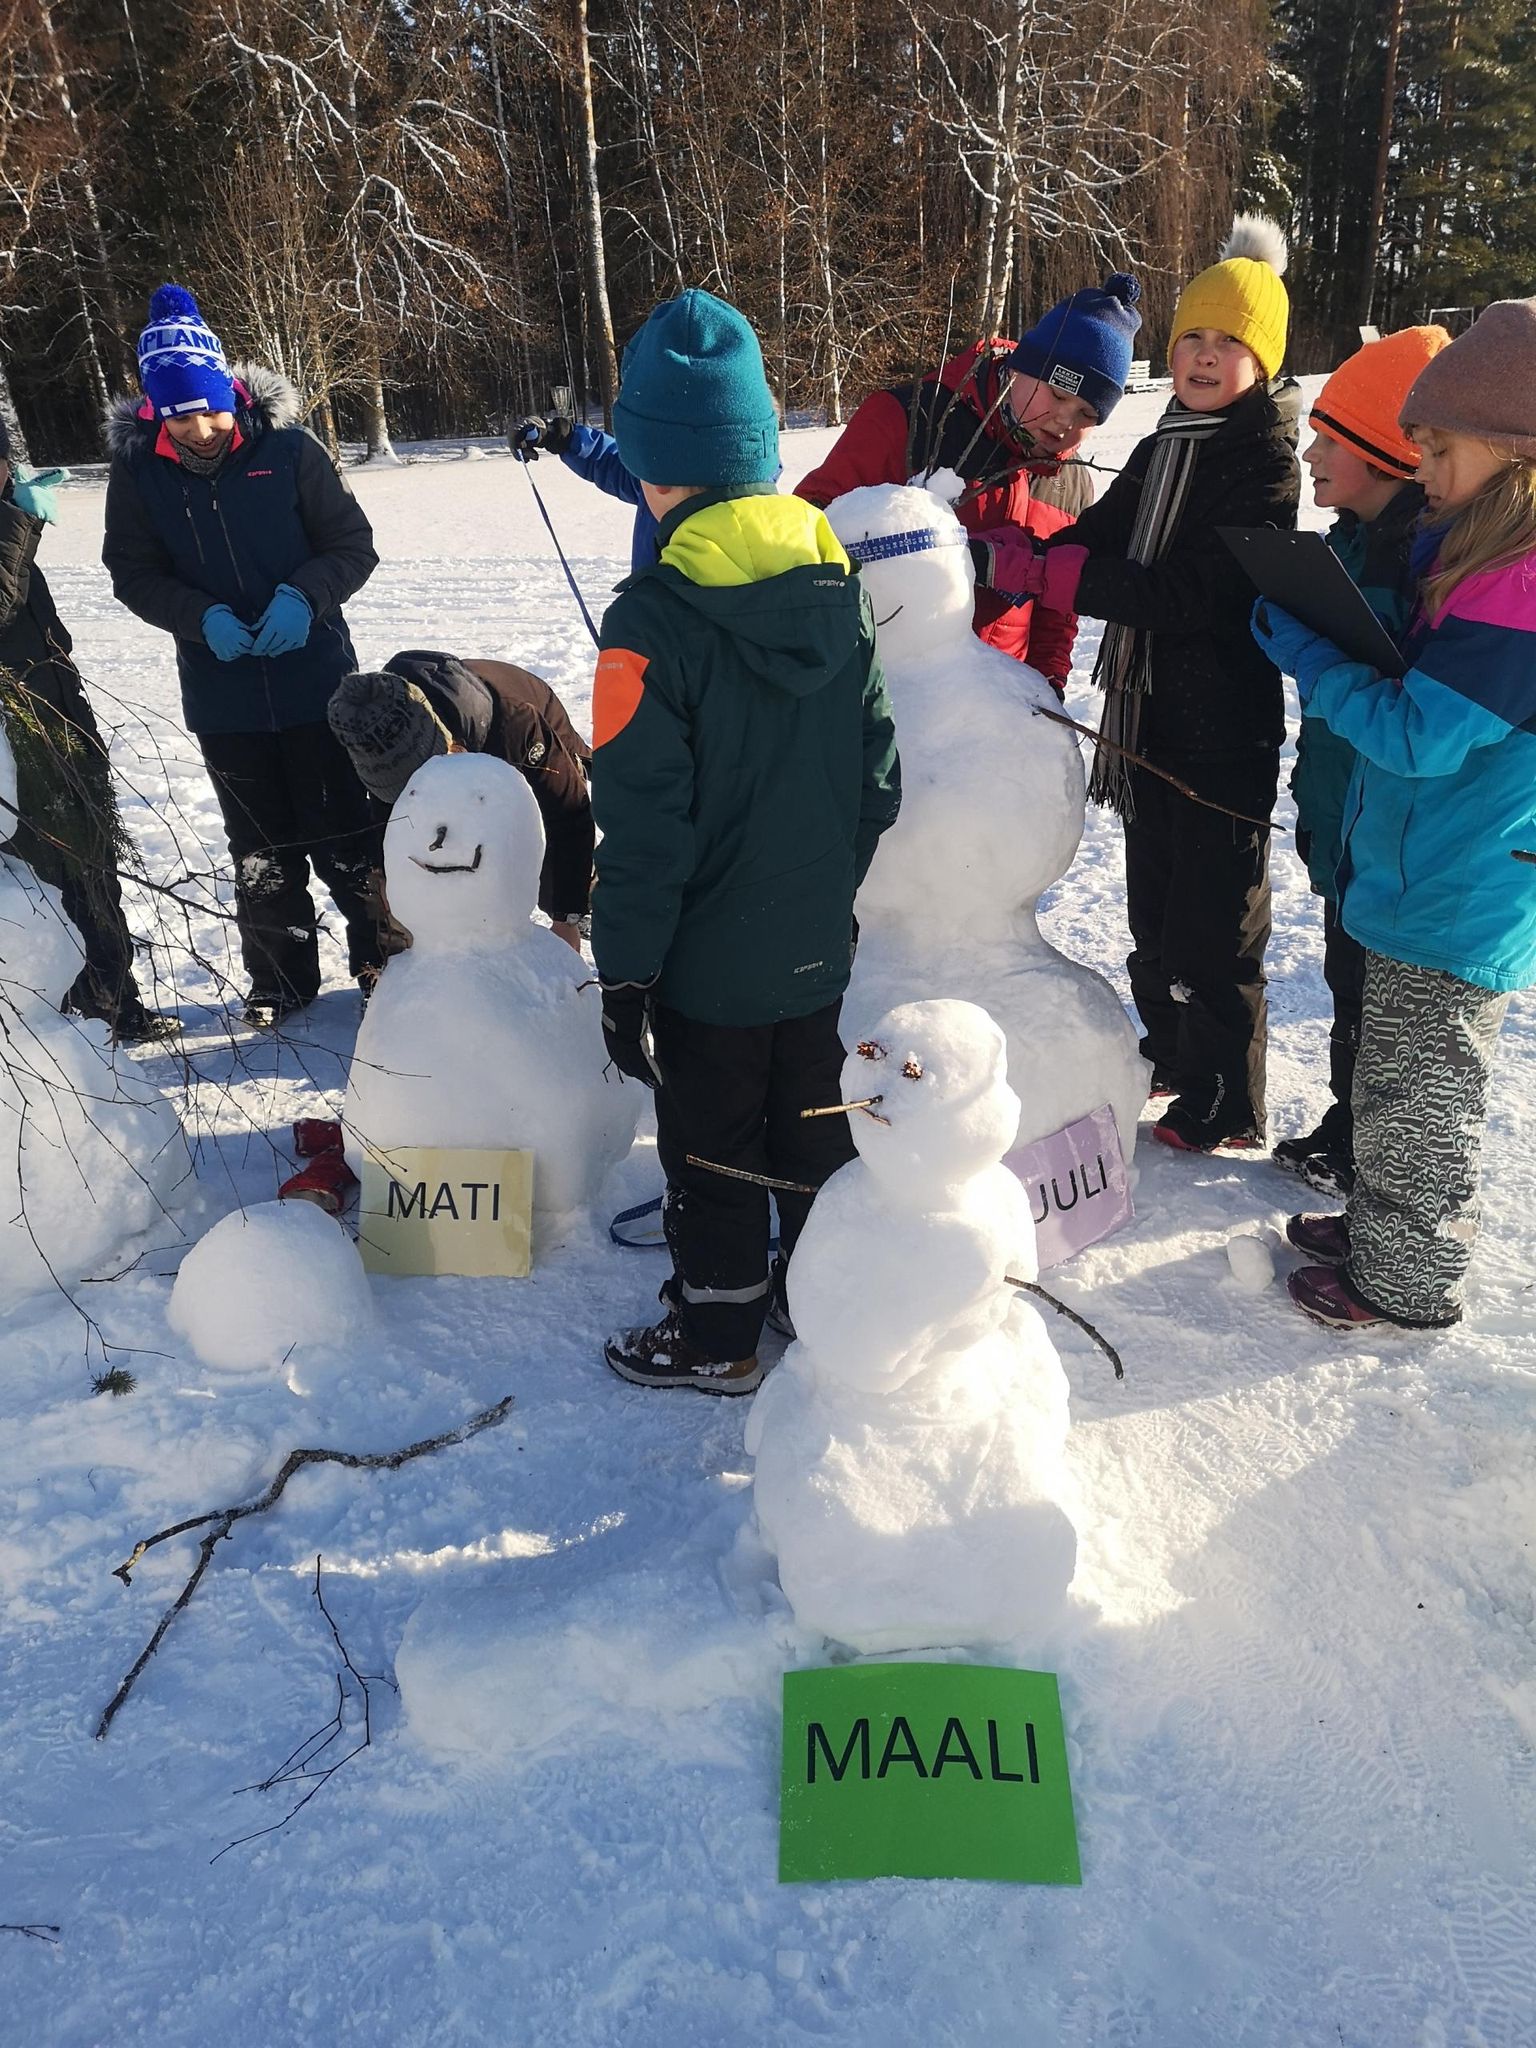 Vastseliina gümnaasiumi õpilased lumememmi ehitamas.